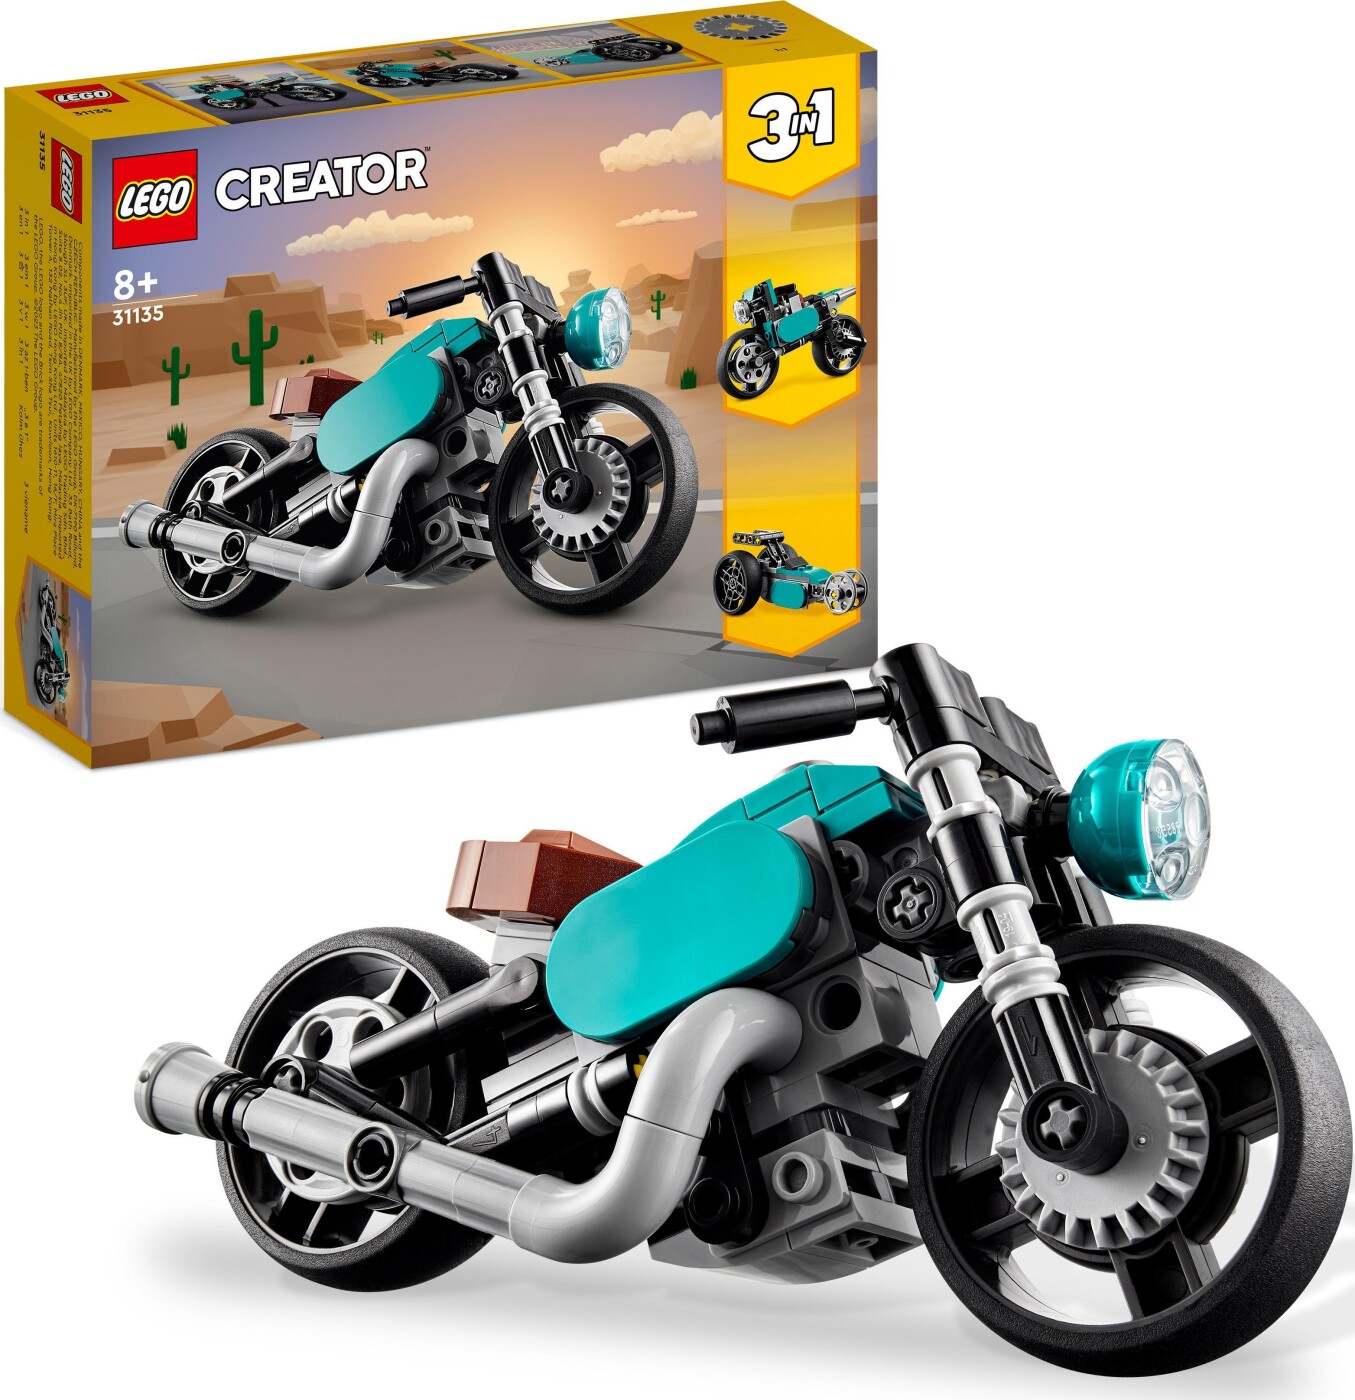 Billede af Lego Creator 3-in-1 - Vintage Motorcykel - 31135